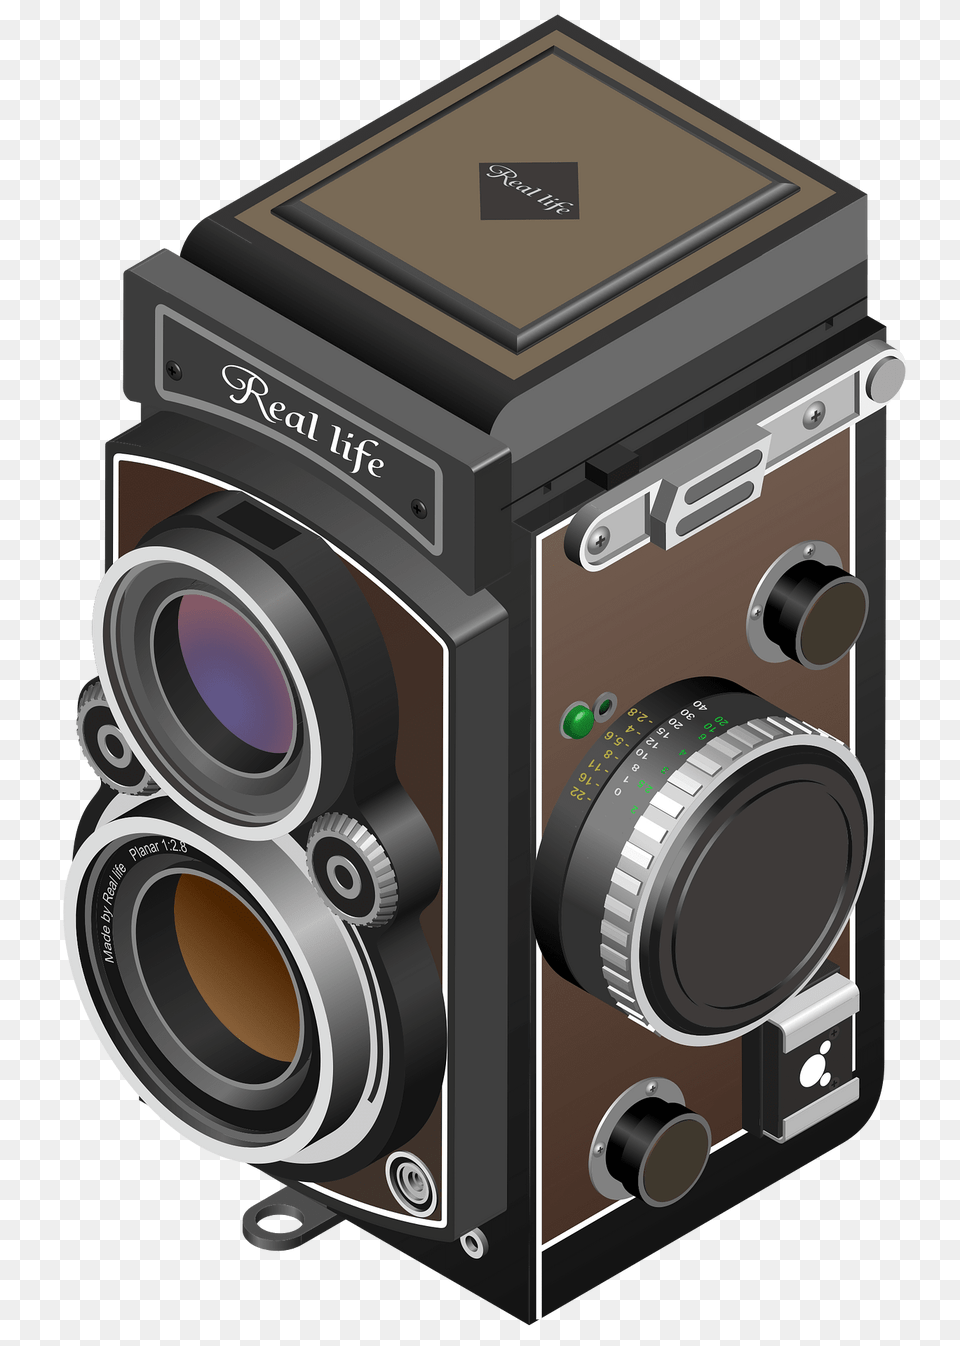 Twin Lens Reflex Camera Clipart, Digital Camera, Electronics Png